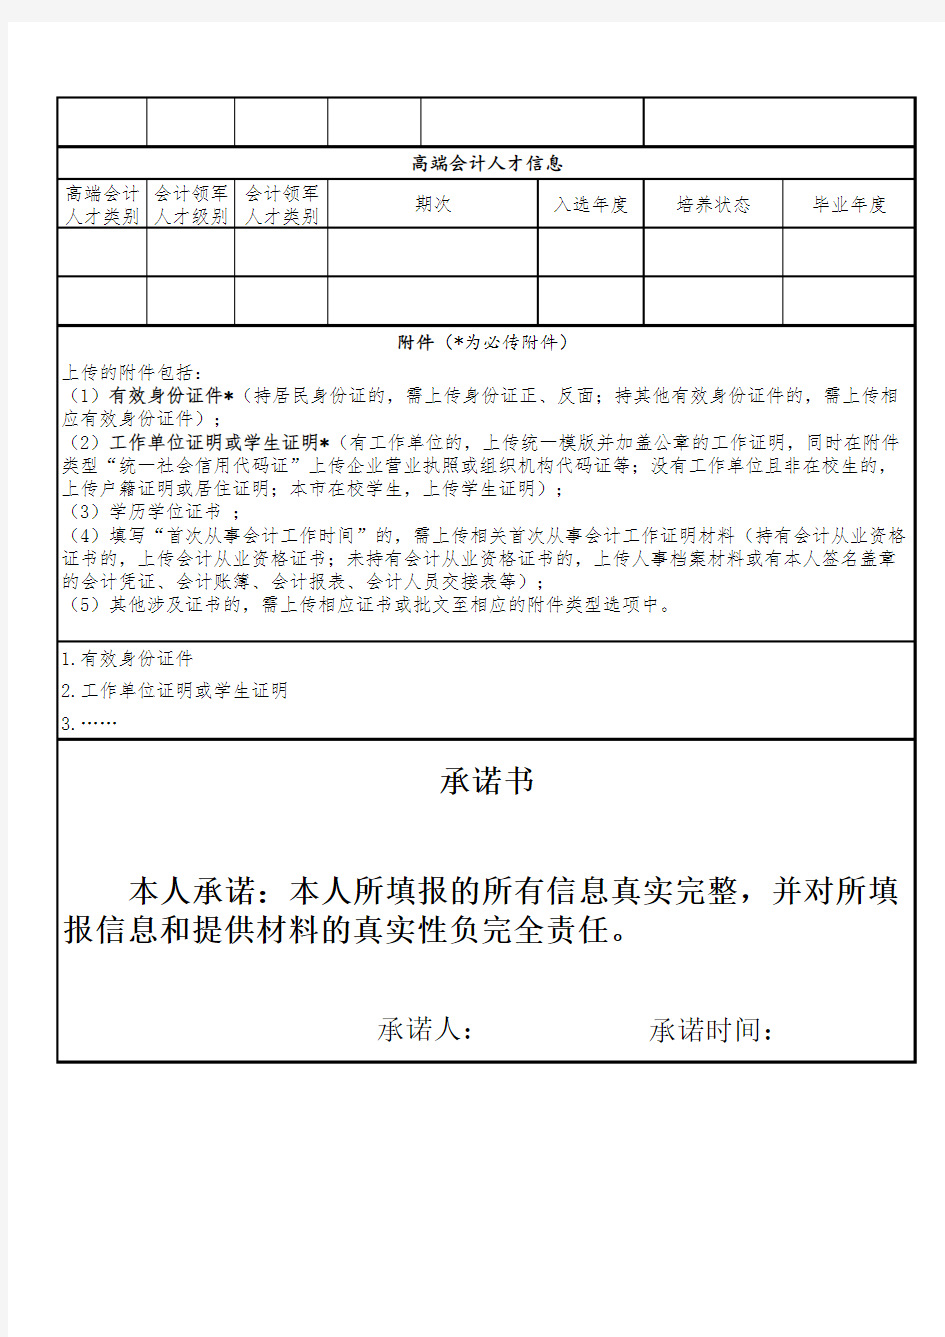 上海市会计人员信息登记表